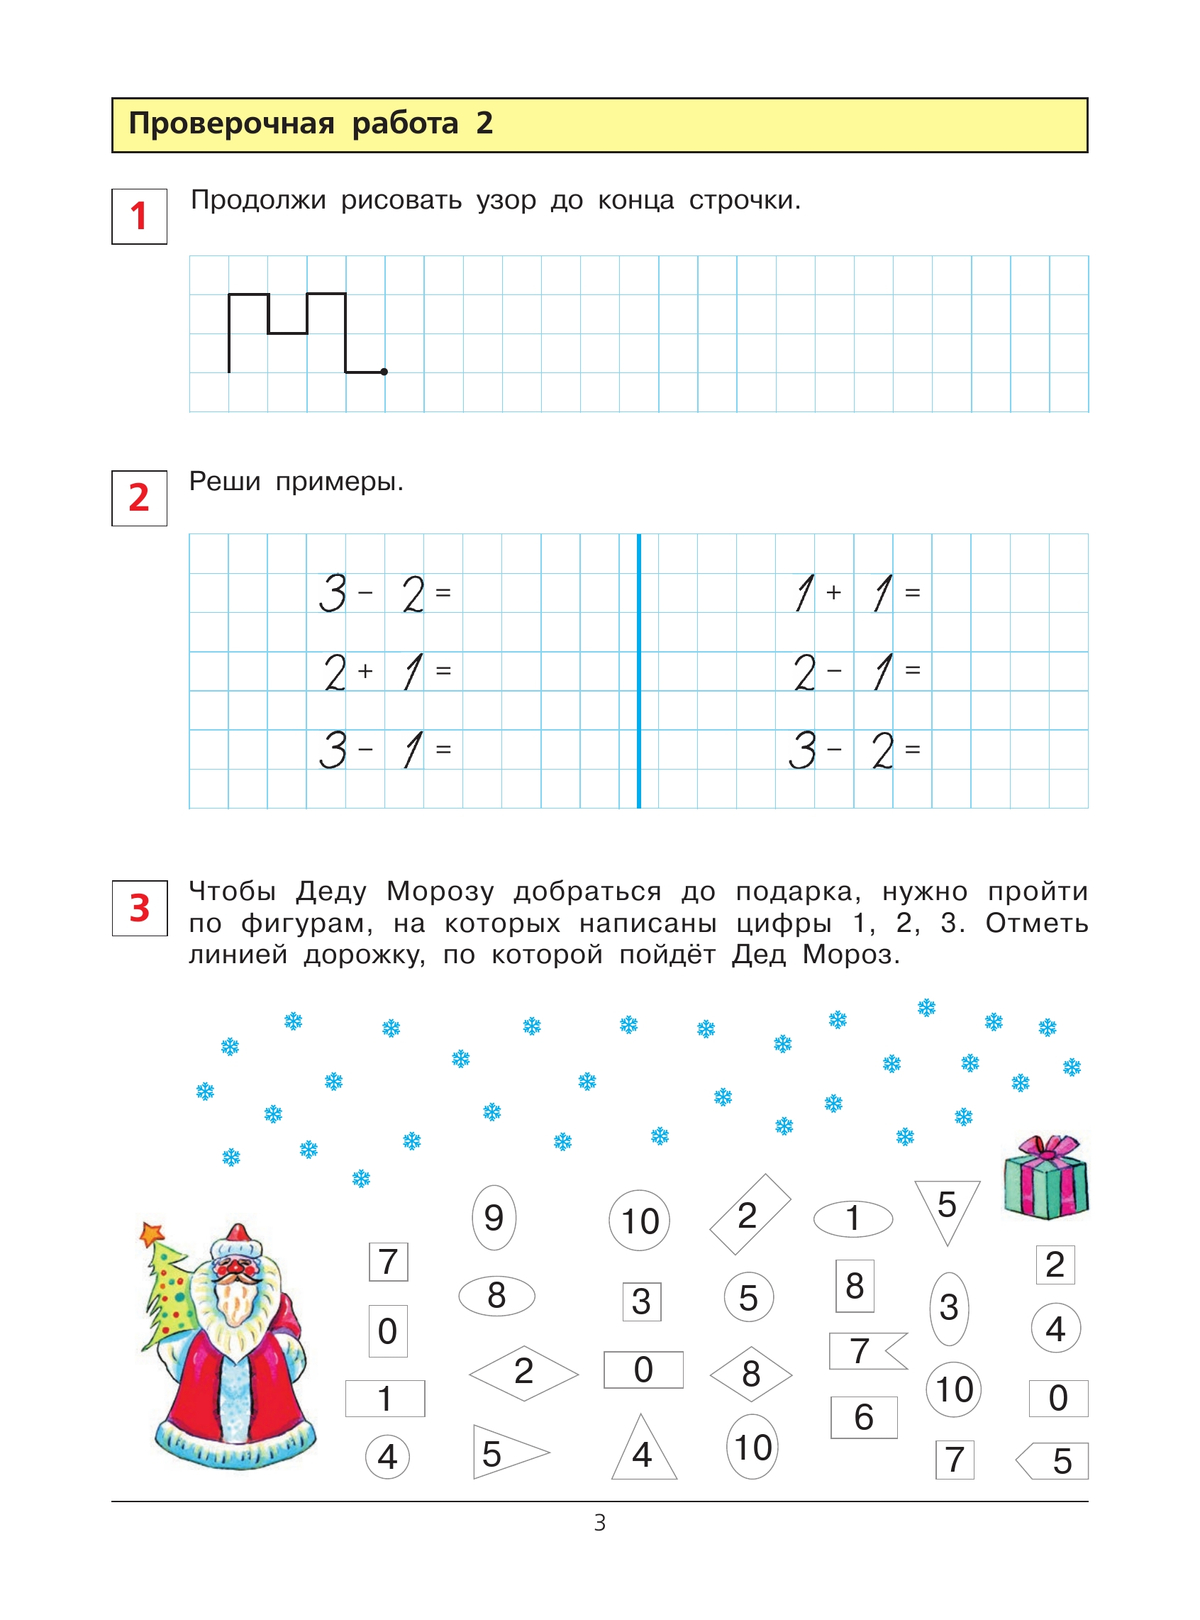 Проверочные работы по математике. Рабочая тетрадь для детей 6-7 лет 5